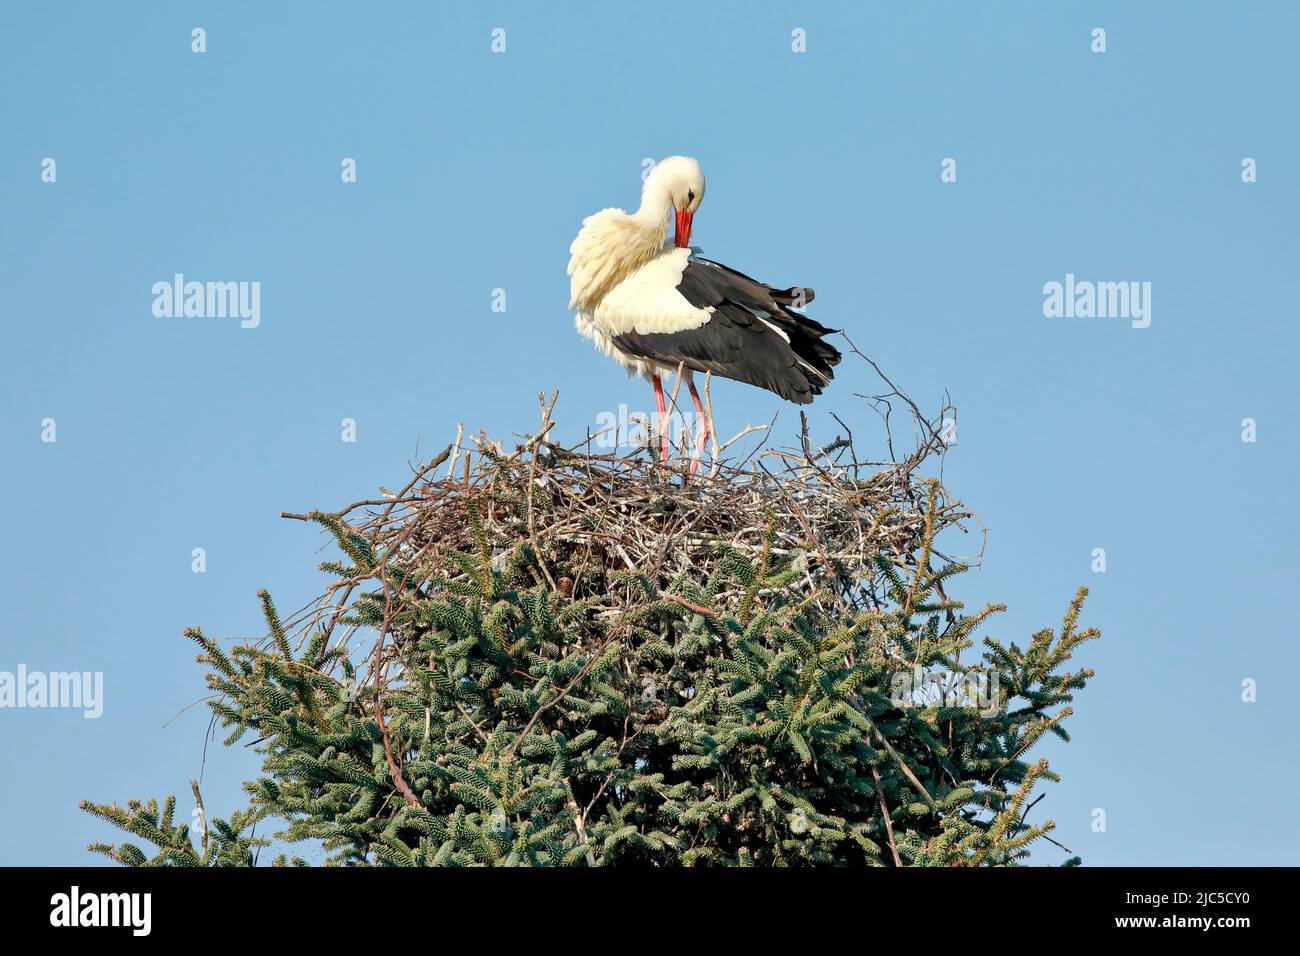 Einzelner Weißstorch steht im Nest und putzt sich mit dem Schnabel sein Gefieder, Oetwil am See, Kanton Zürich, Schweiz *** Local Caption ***  Tree to Stock Photo